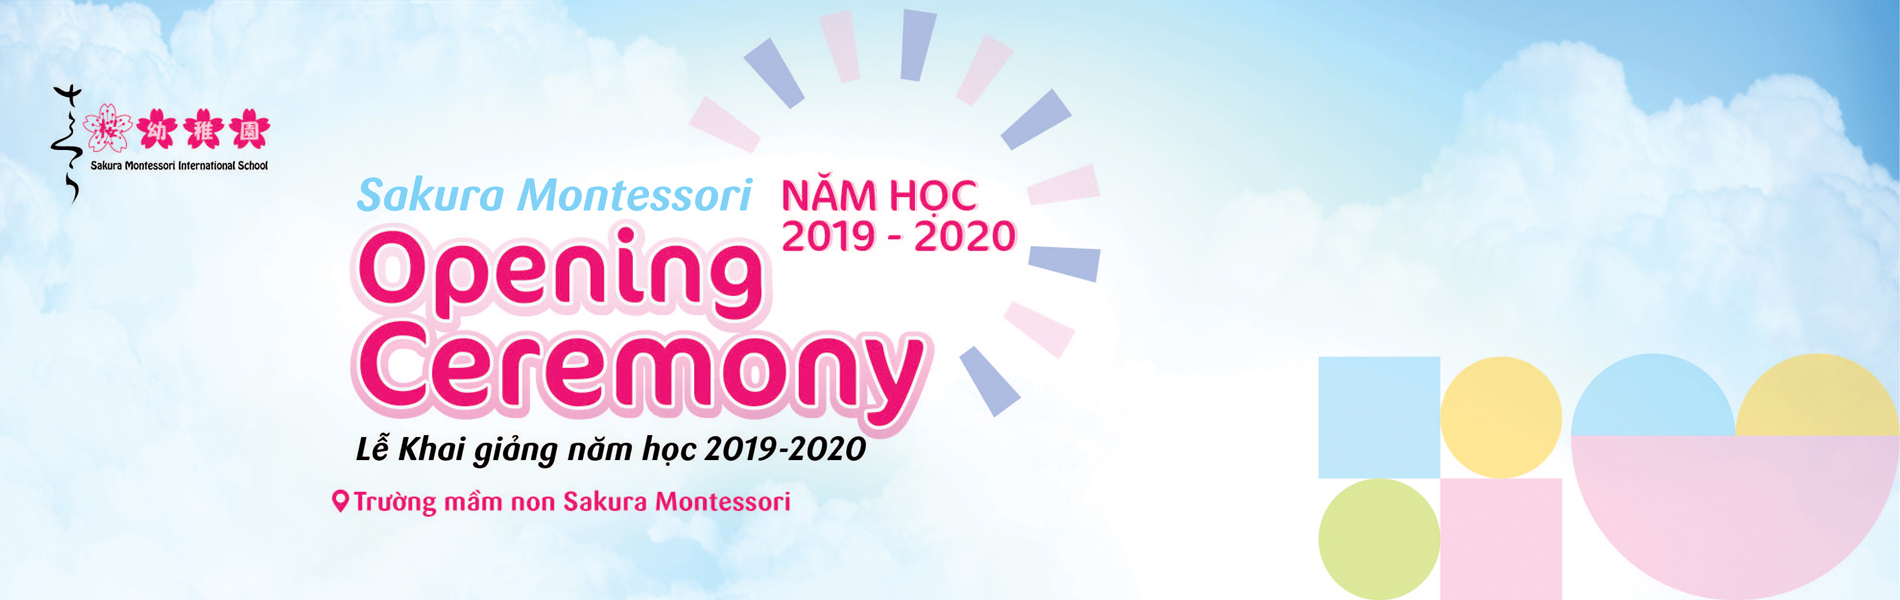 Lễ Khai giảng toàn hệ thống Sakura Montessori - Chào mừng năm học 2019 - 2020